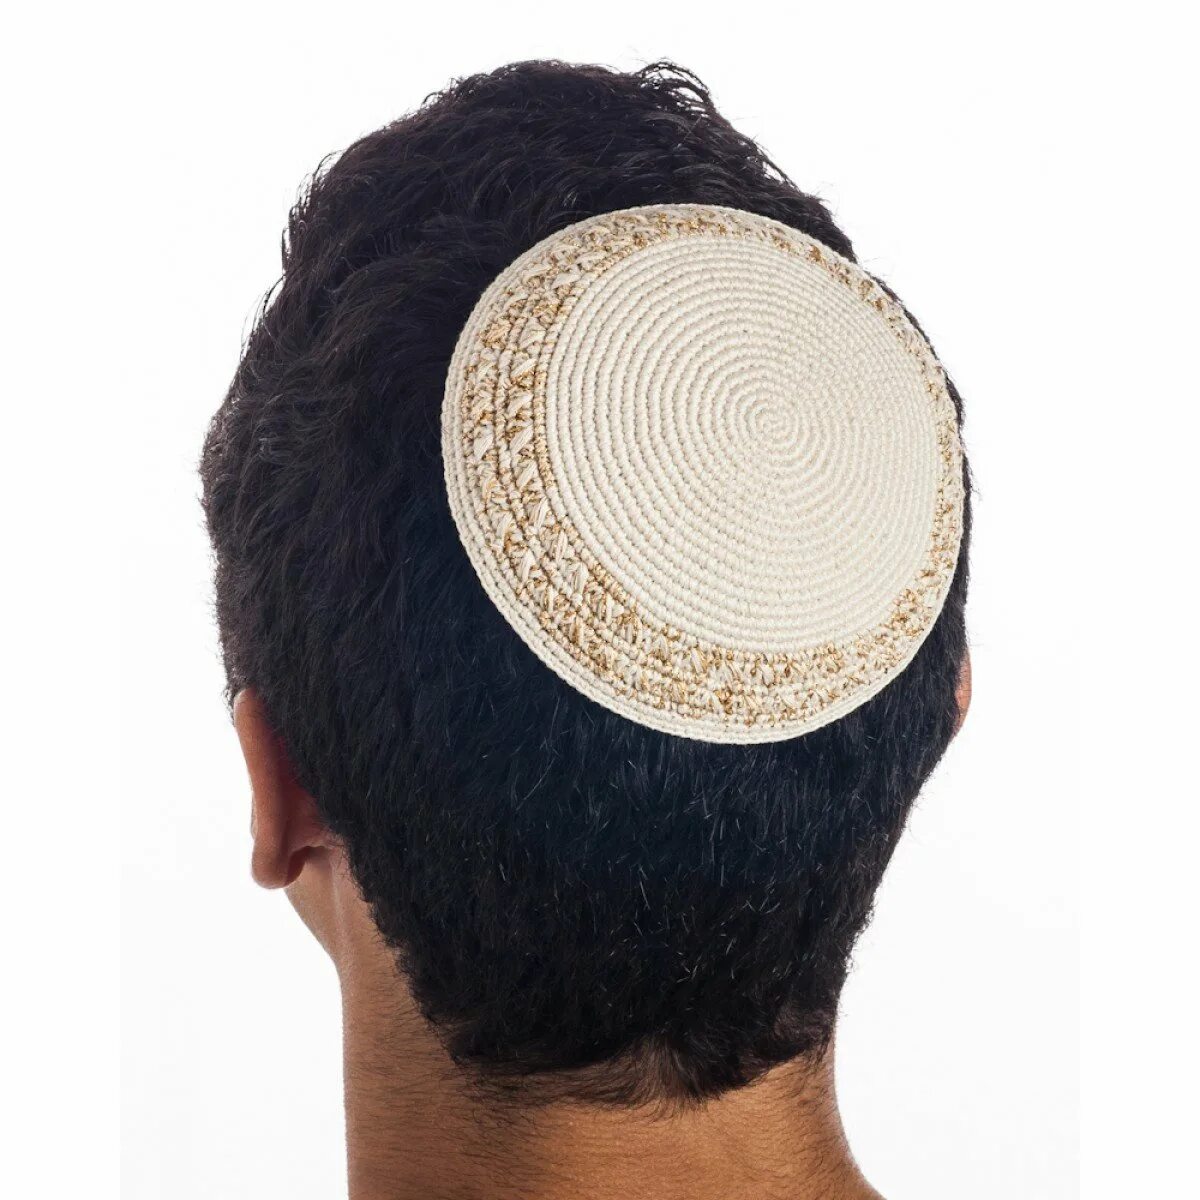 Еврейская шапочка ермолка. Еврейская шапка штраймл. Еврейская мужская Национальная шапка ермолка. Ермолка тюбетейка.